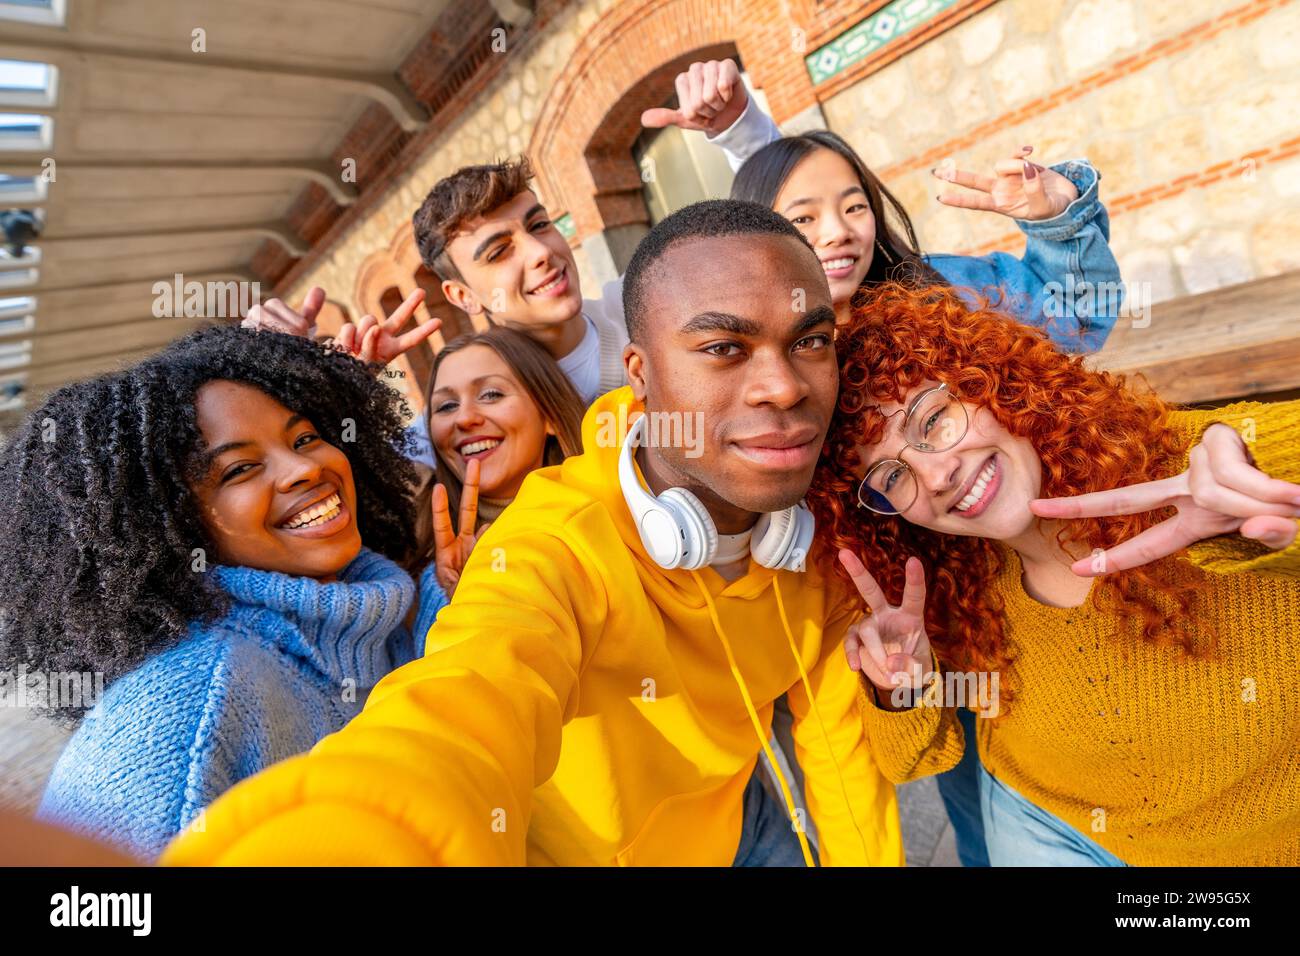 Persönlicher Standpunkt eines jungen afrikaners und cooler Freunde, die ein Selfie auf der Straße machen Stockfoto